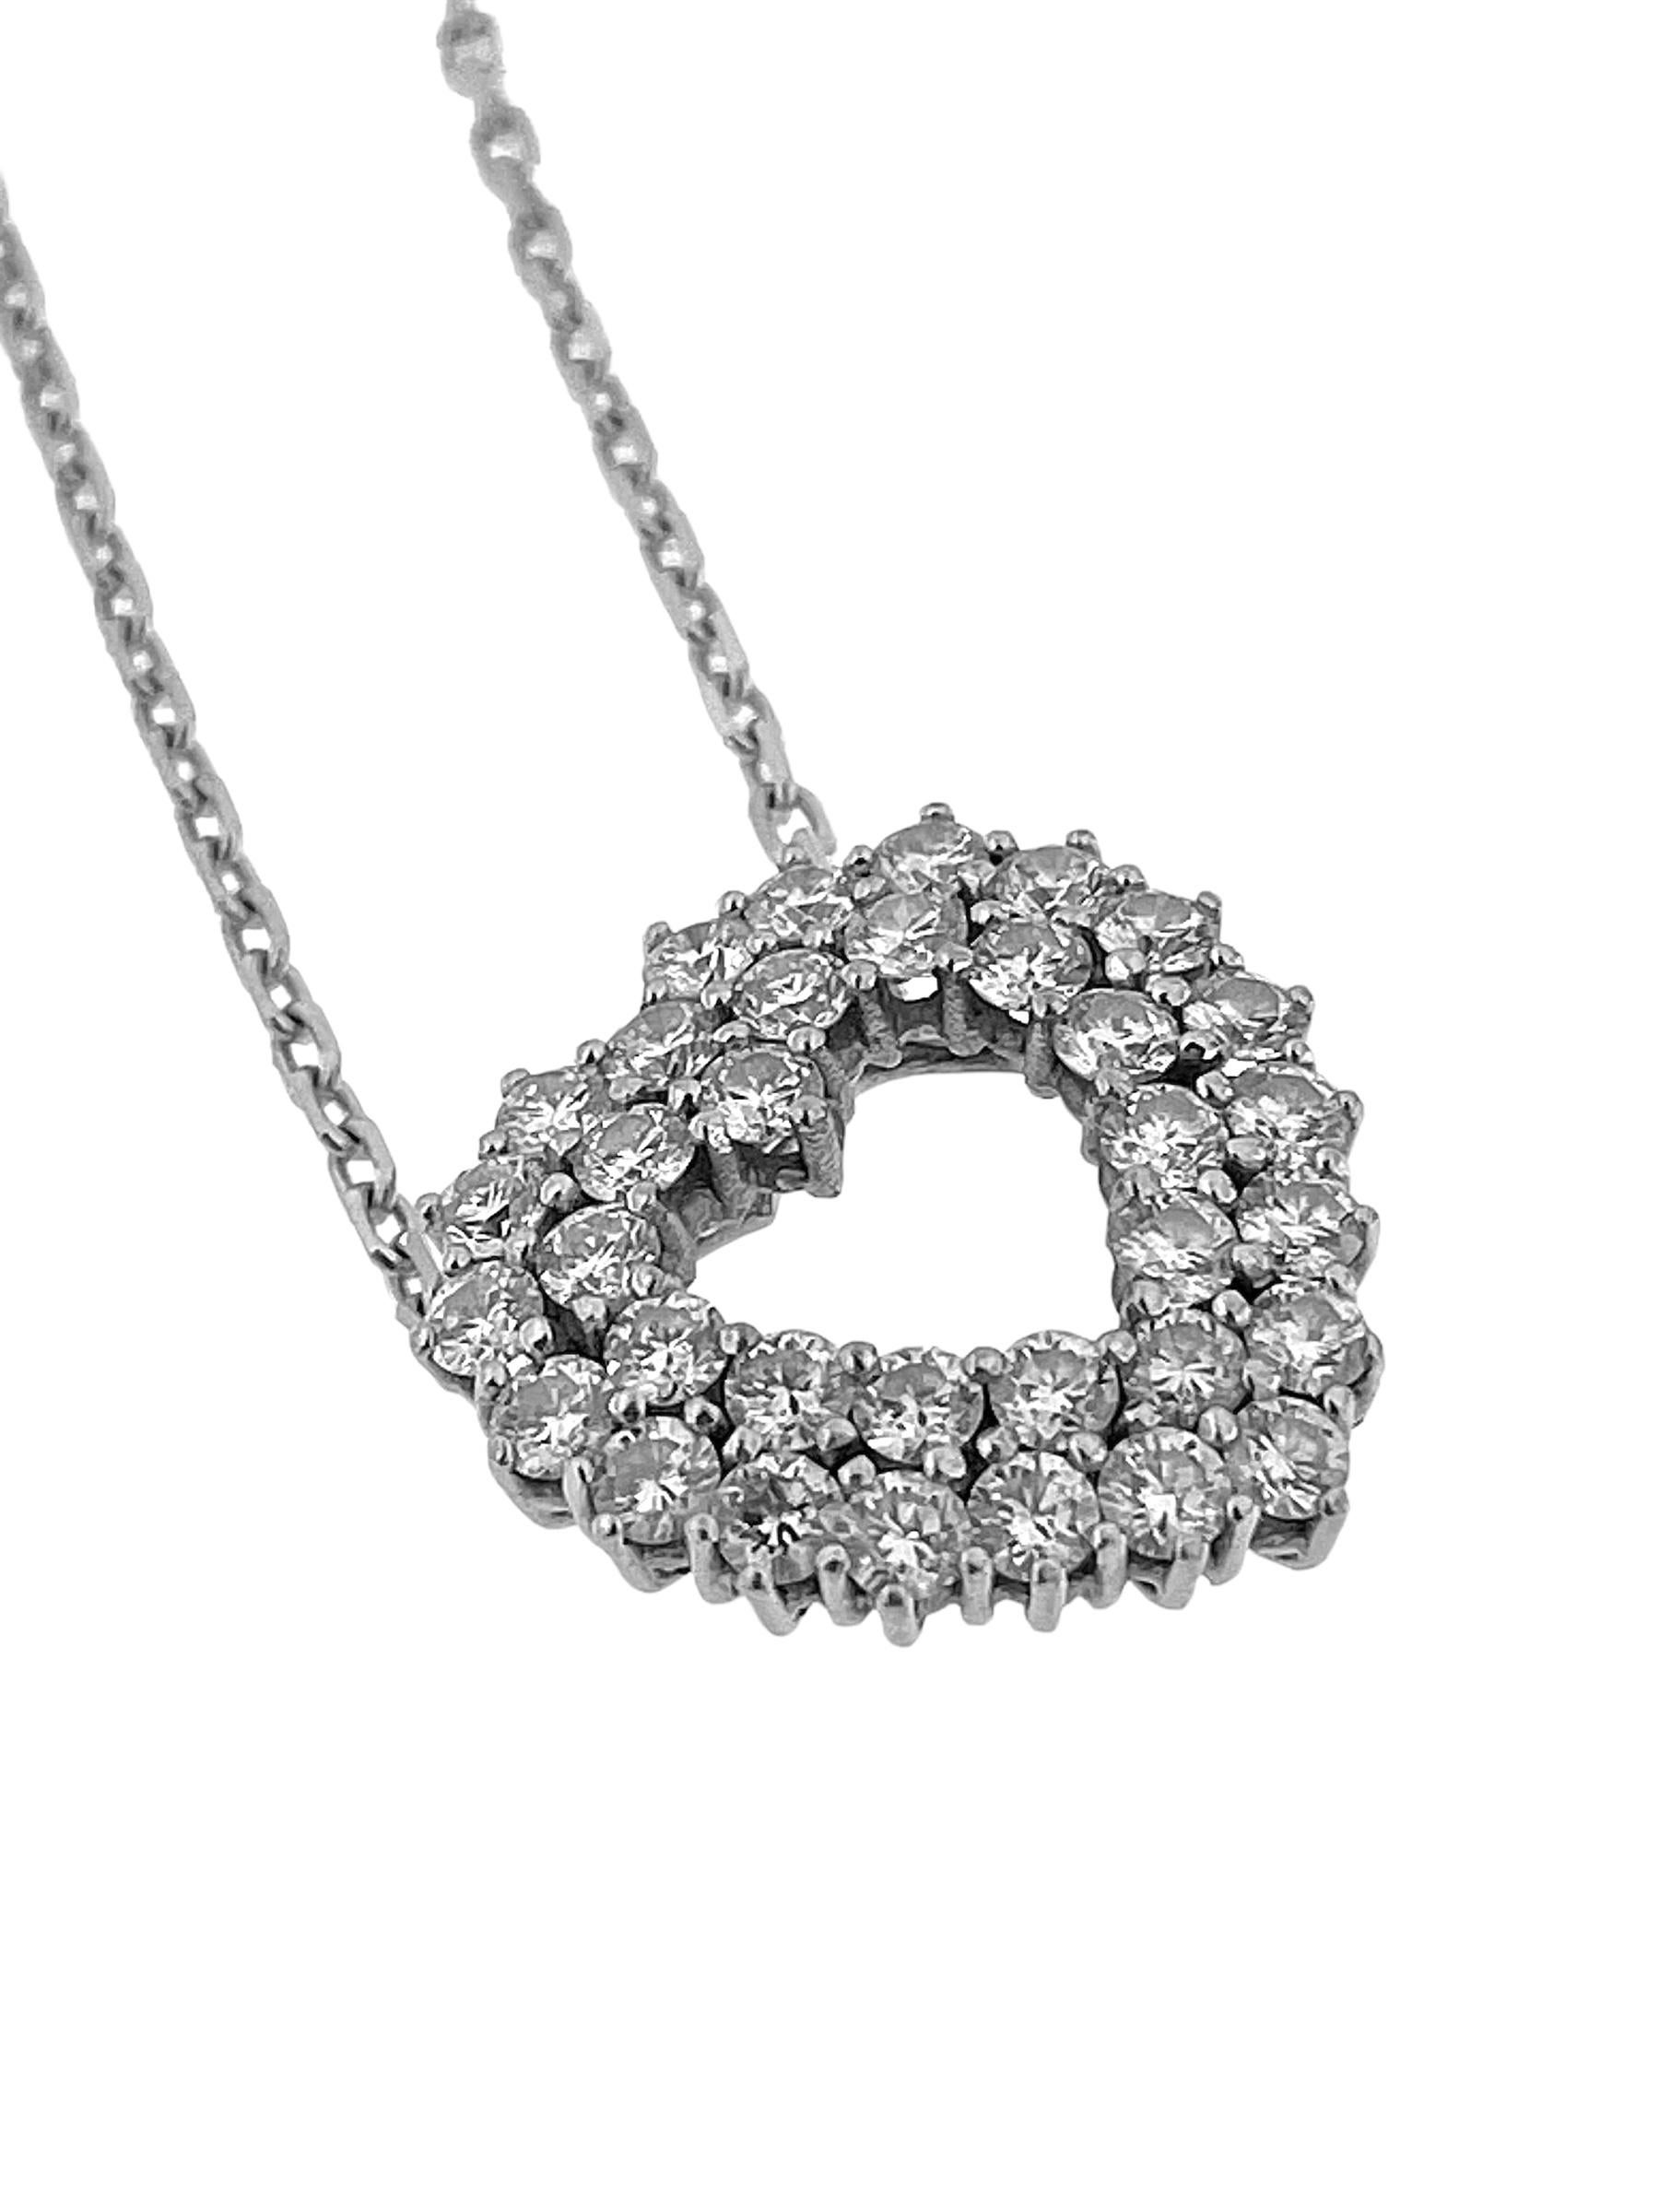 Le collier de cœur en diamants italiens en or blanc 18 carats est une expression époustouflante d'amour et de sophistication. Réalisé avec une attention exquise aux détails, ce collier présente un pendentif en forme de cœur orné de diamants